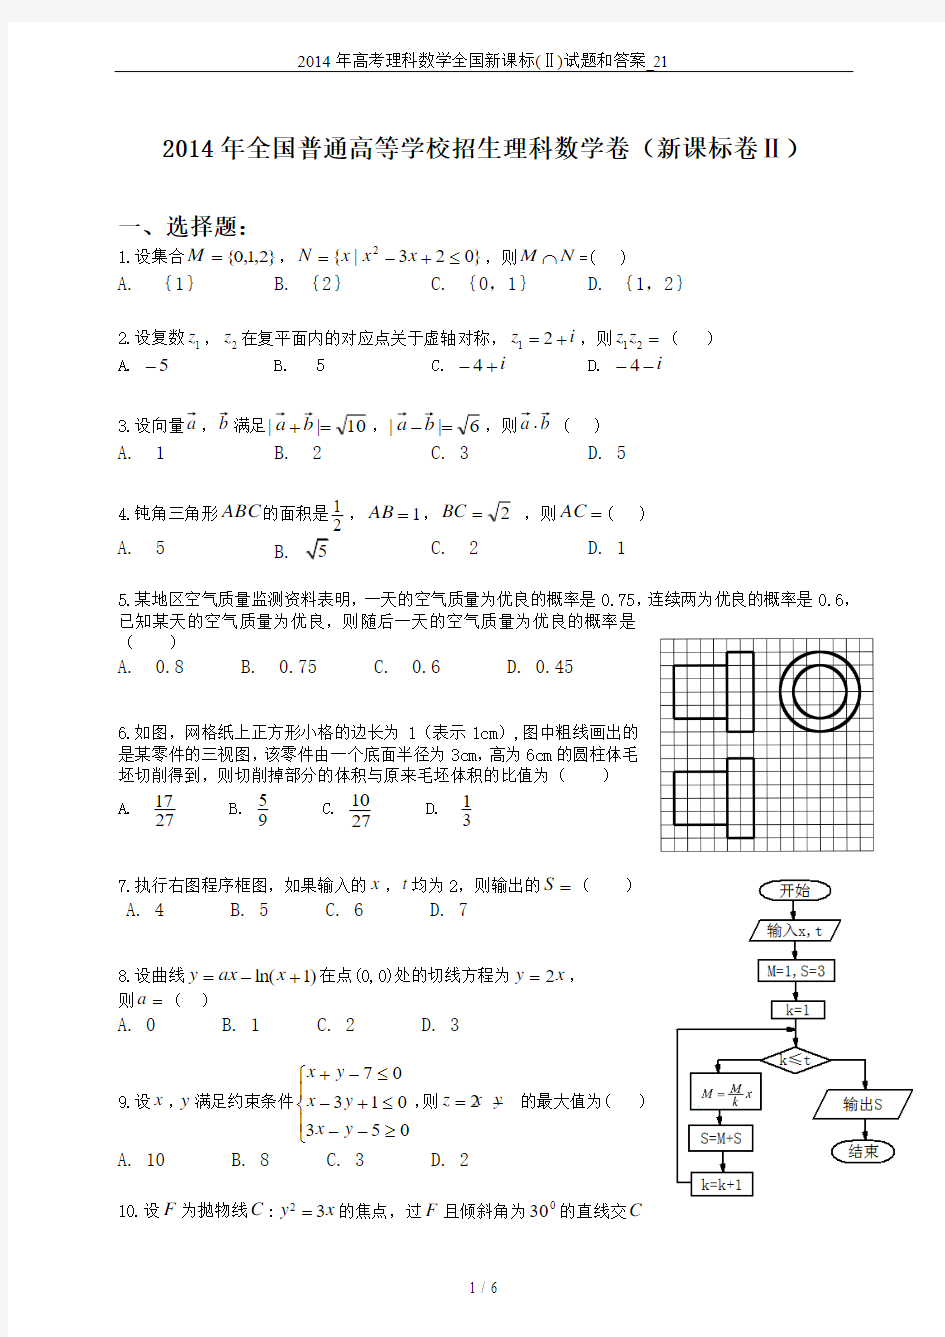 2014年高考理科数学全国新课标(Ⅱ)试题和答案_21